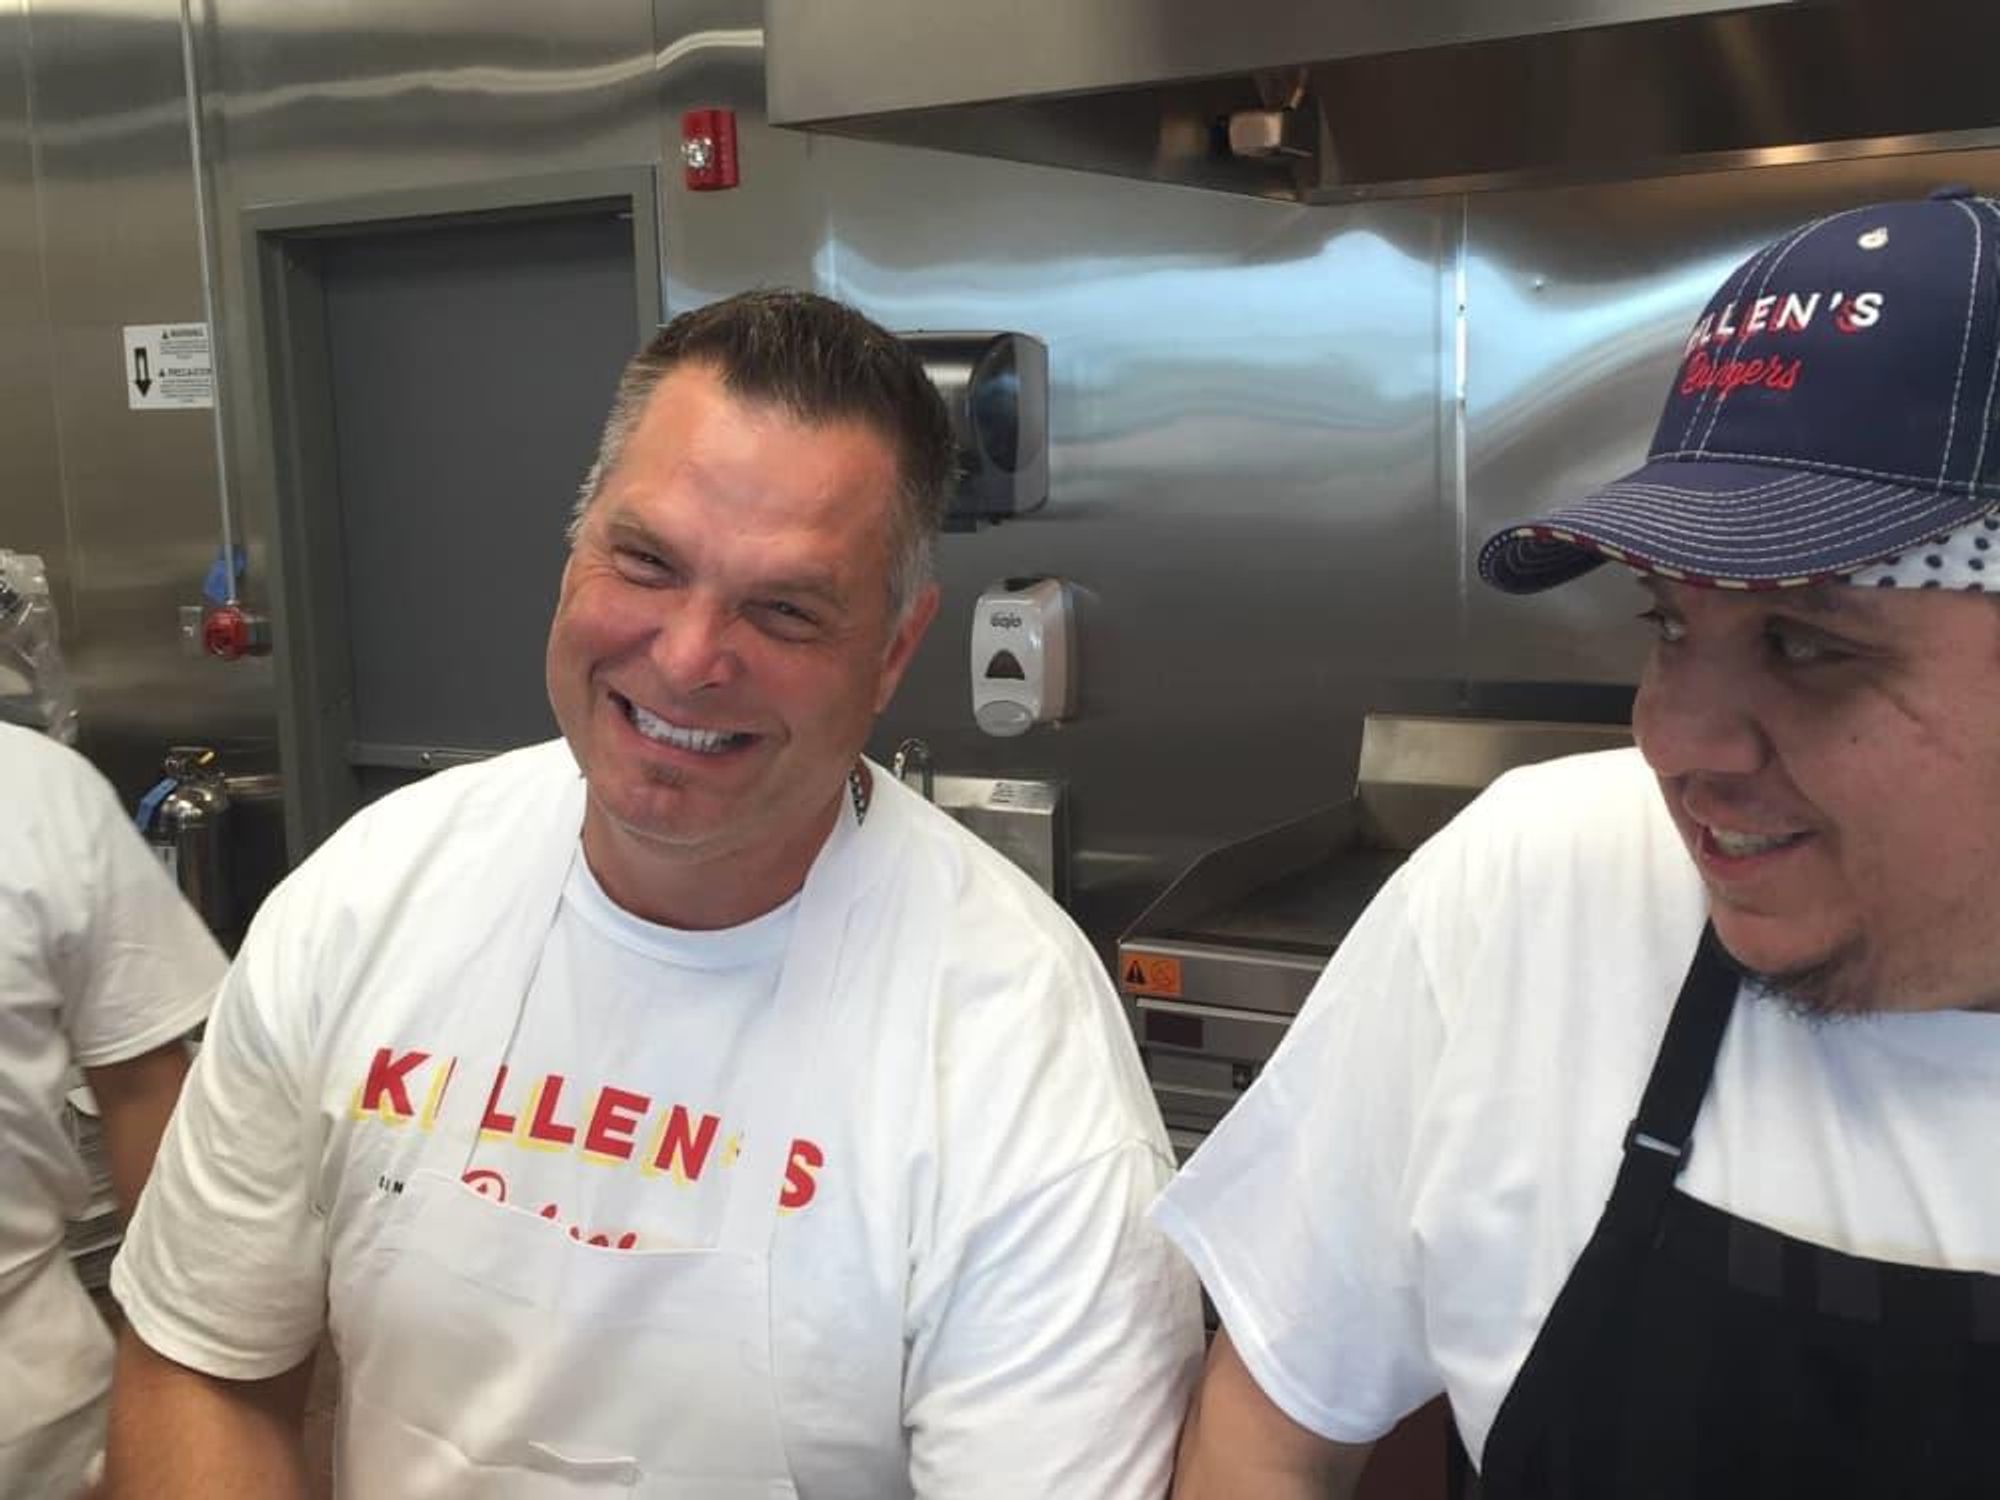 Ronnie Killen Killen's Burgers